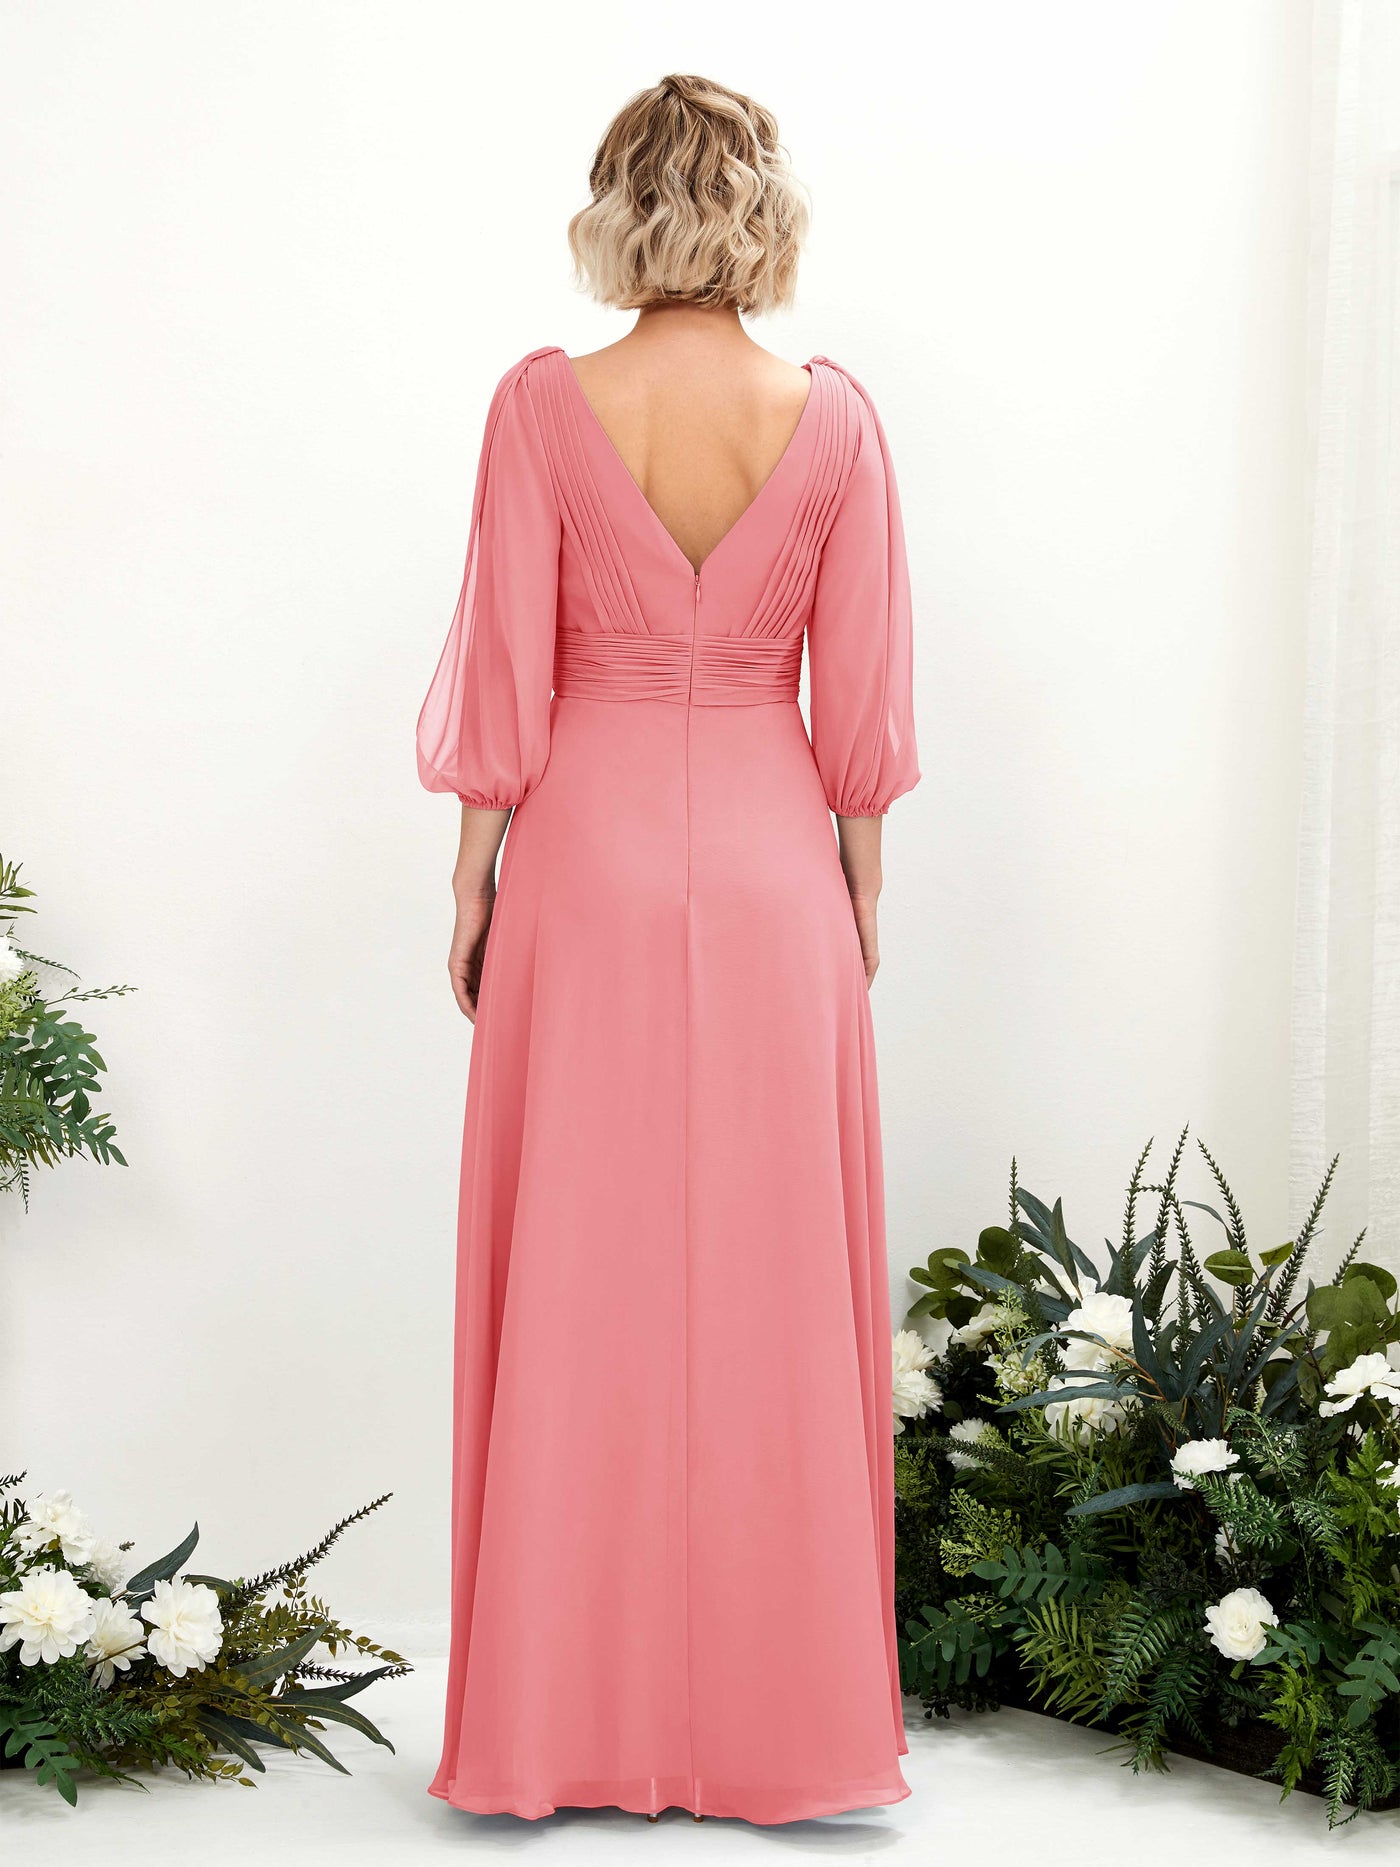 Coral Pink Bridesmaid Dresses Bridesmaid Dress Chiffon V-neck Full Length Long Sleeves Wedding Party Dress (81223530)#color_coral-pink